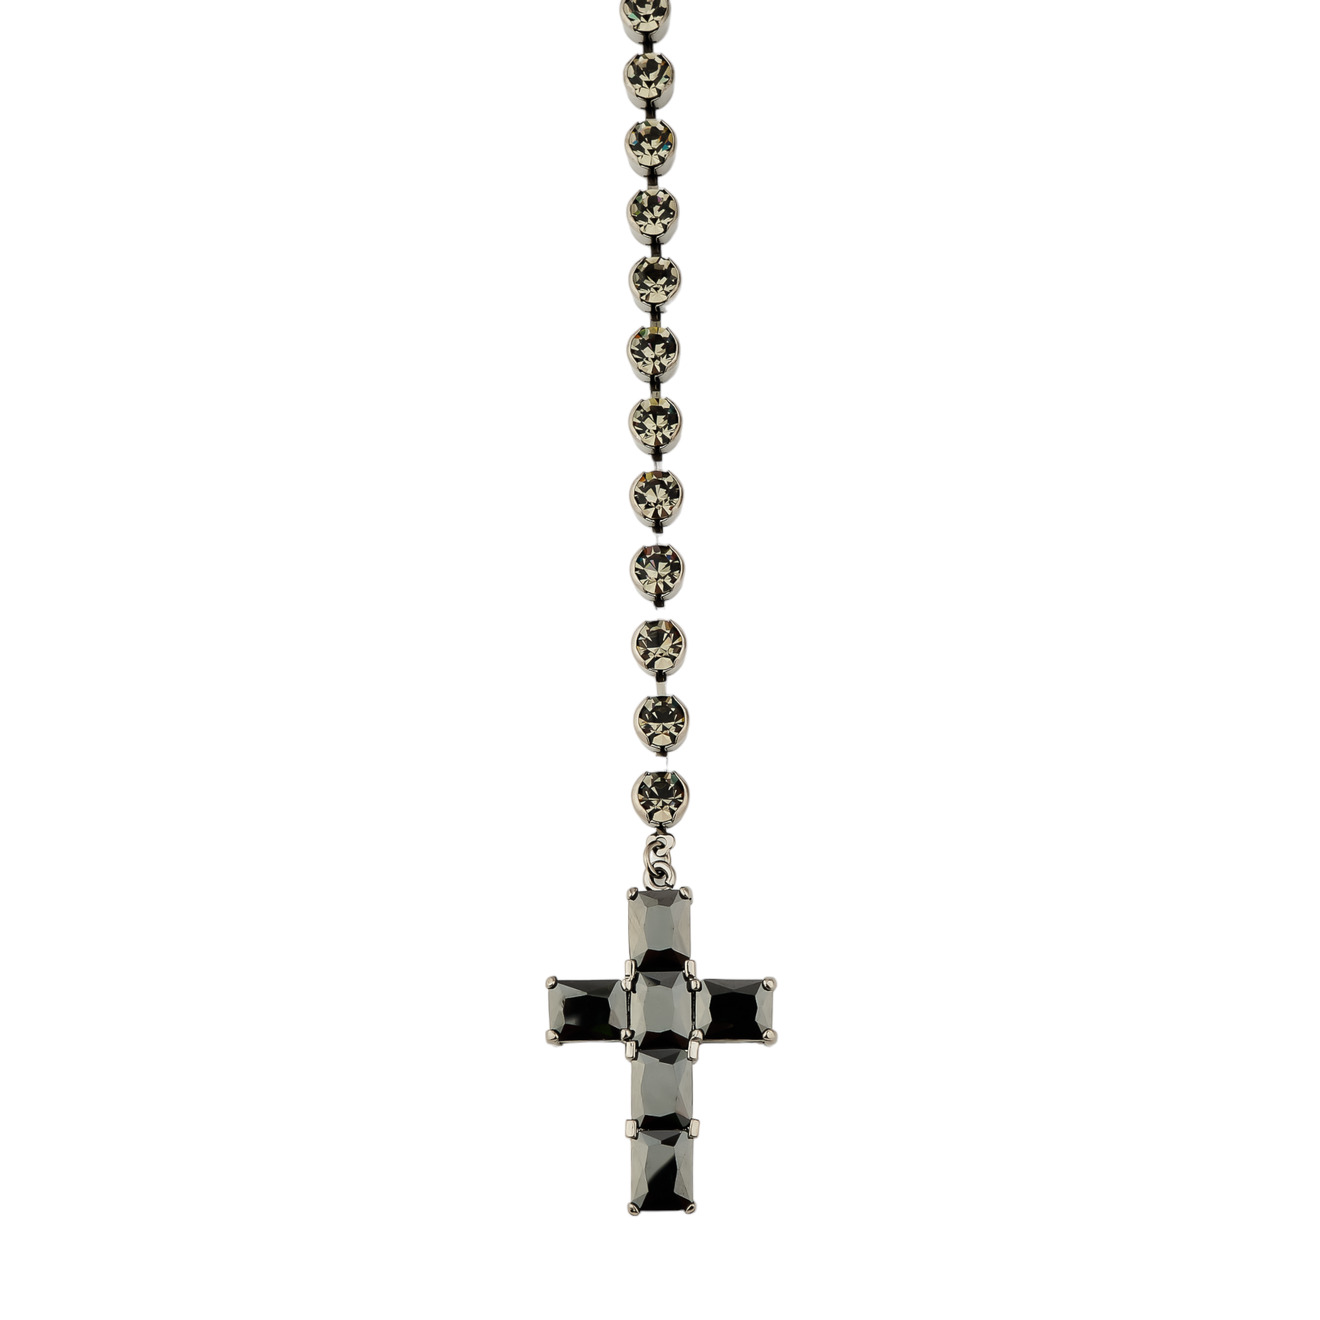 Herald Percy Сотуар с кристаллами и подвеской крестом черного цвета herald percy золотистый сотуар полностью покрытый кристаллами